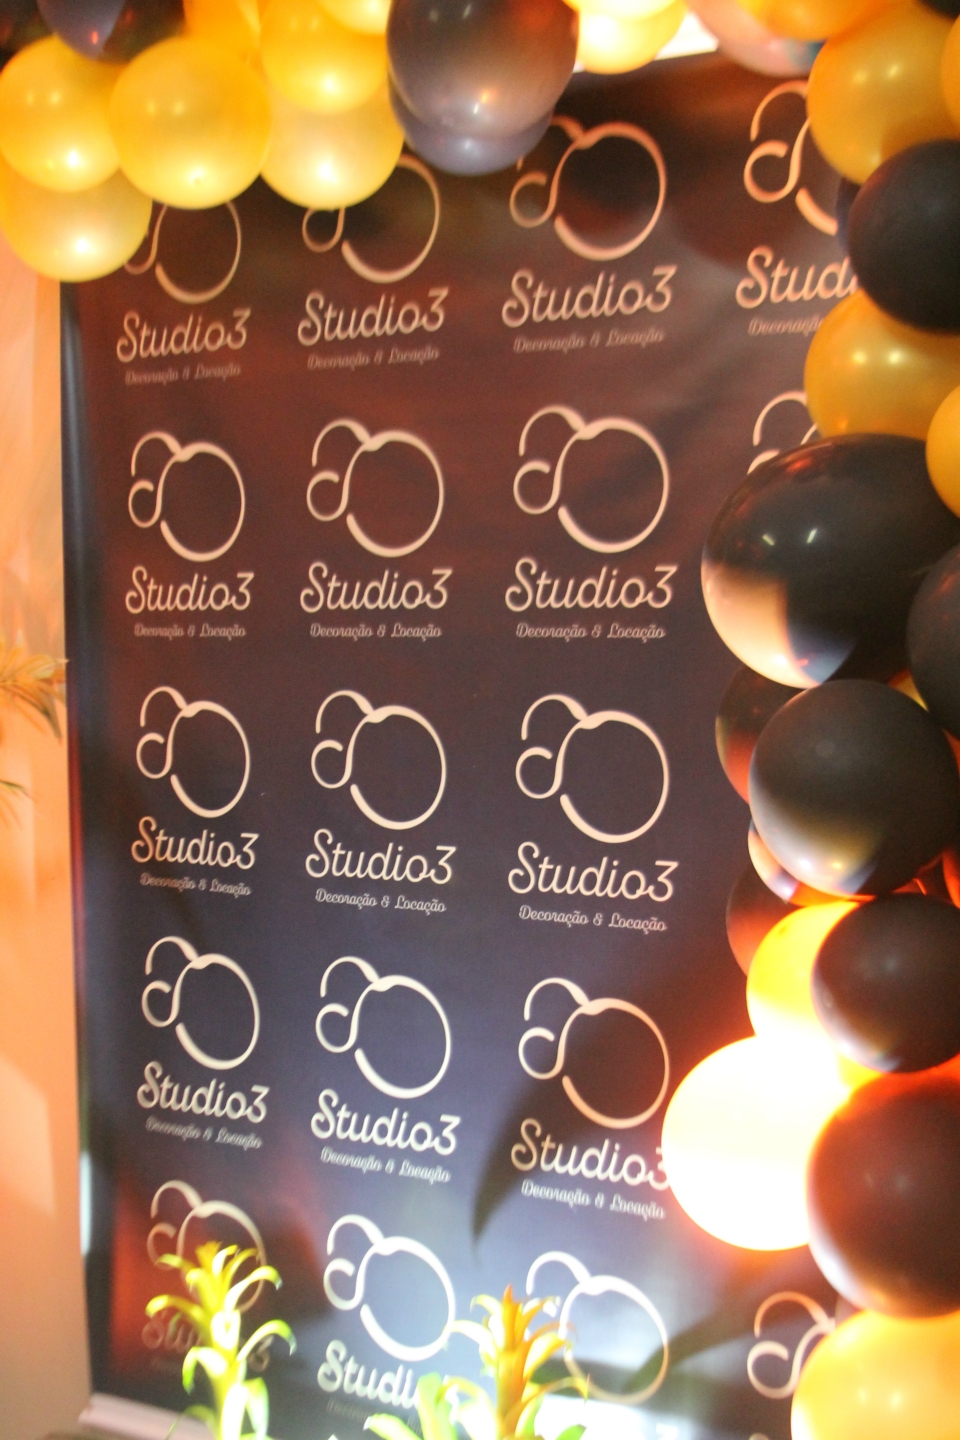 Coquetel marca inauguração do Studio 3 em Três Lagoas